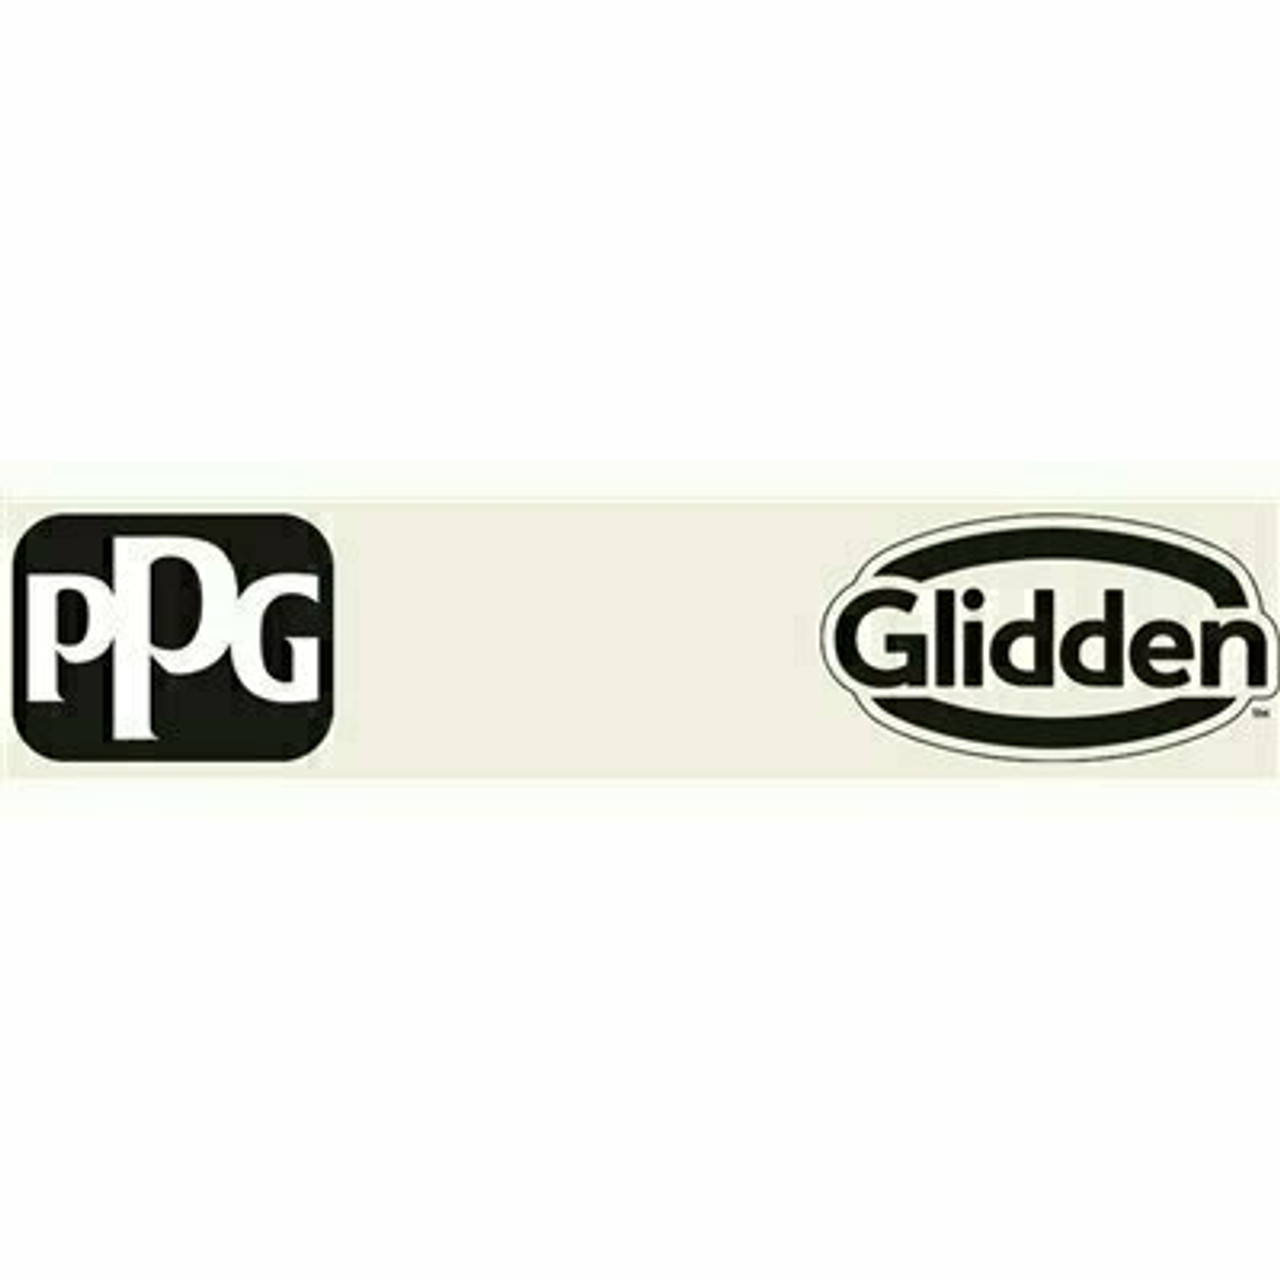 Glidden Diamond 1 Gal. #Ppg1006-1 Gypsum Flat/Matte Exterior Paint